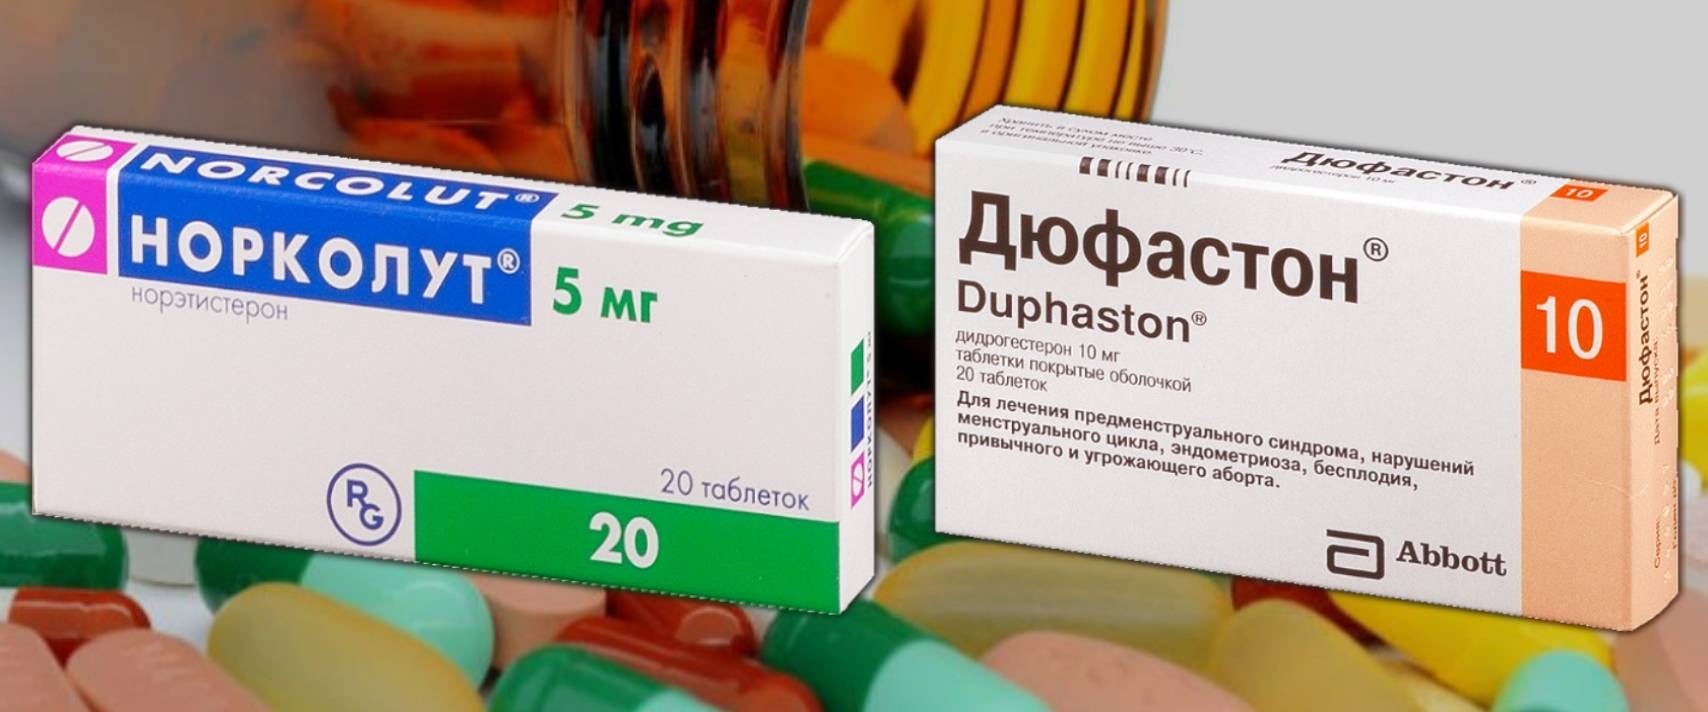 Норколут или Дюфастон - что лучше, в чем разница между препаратами?